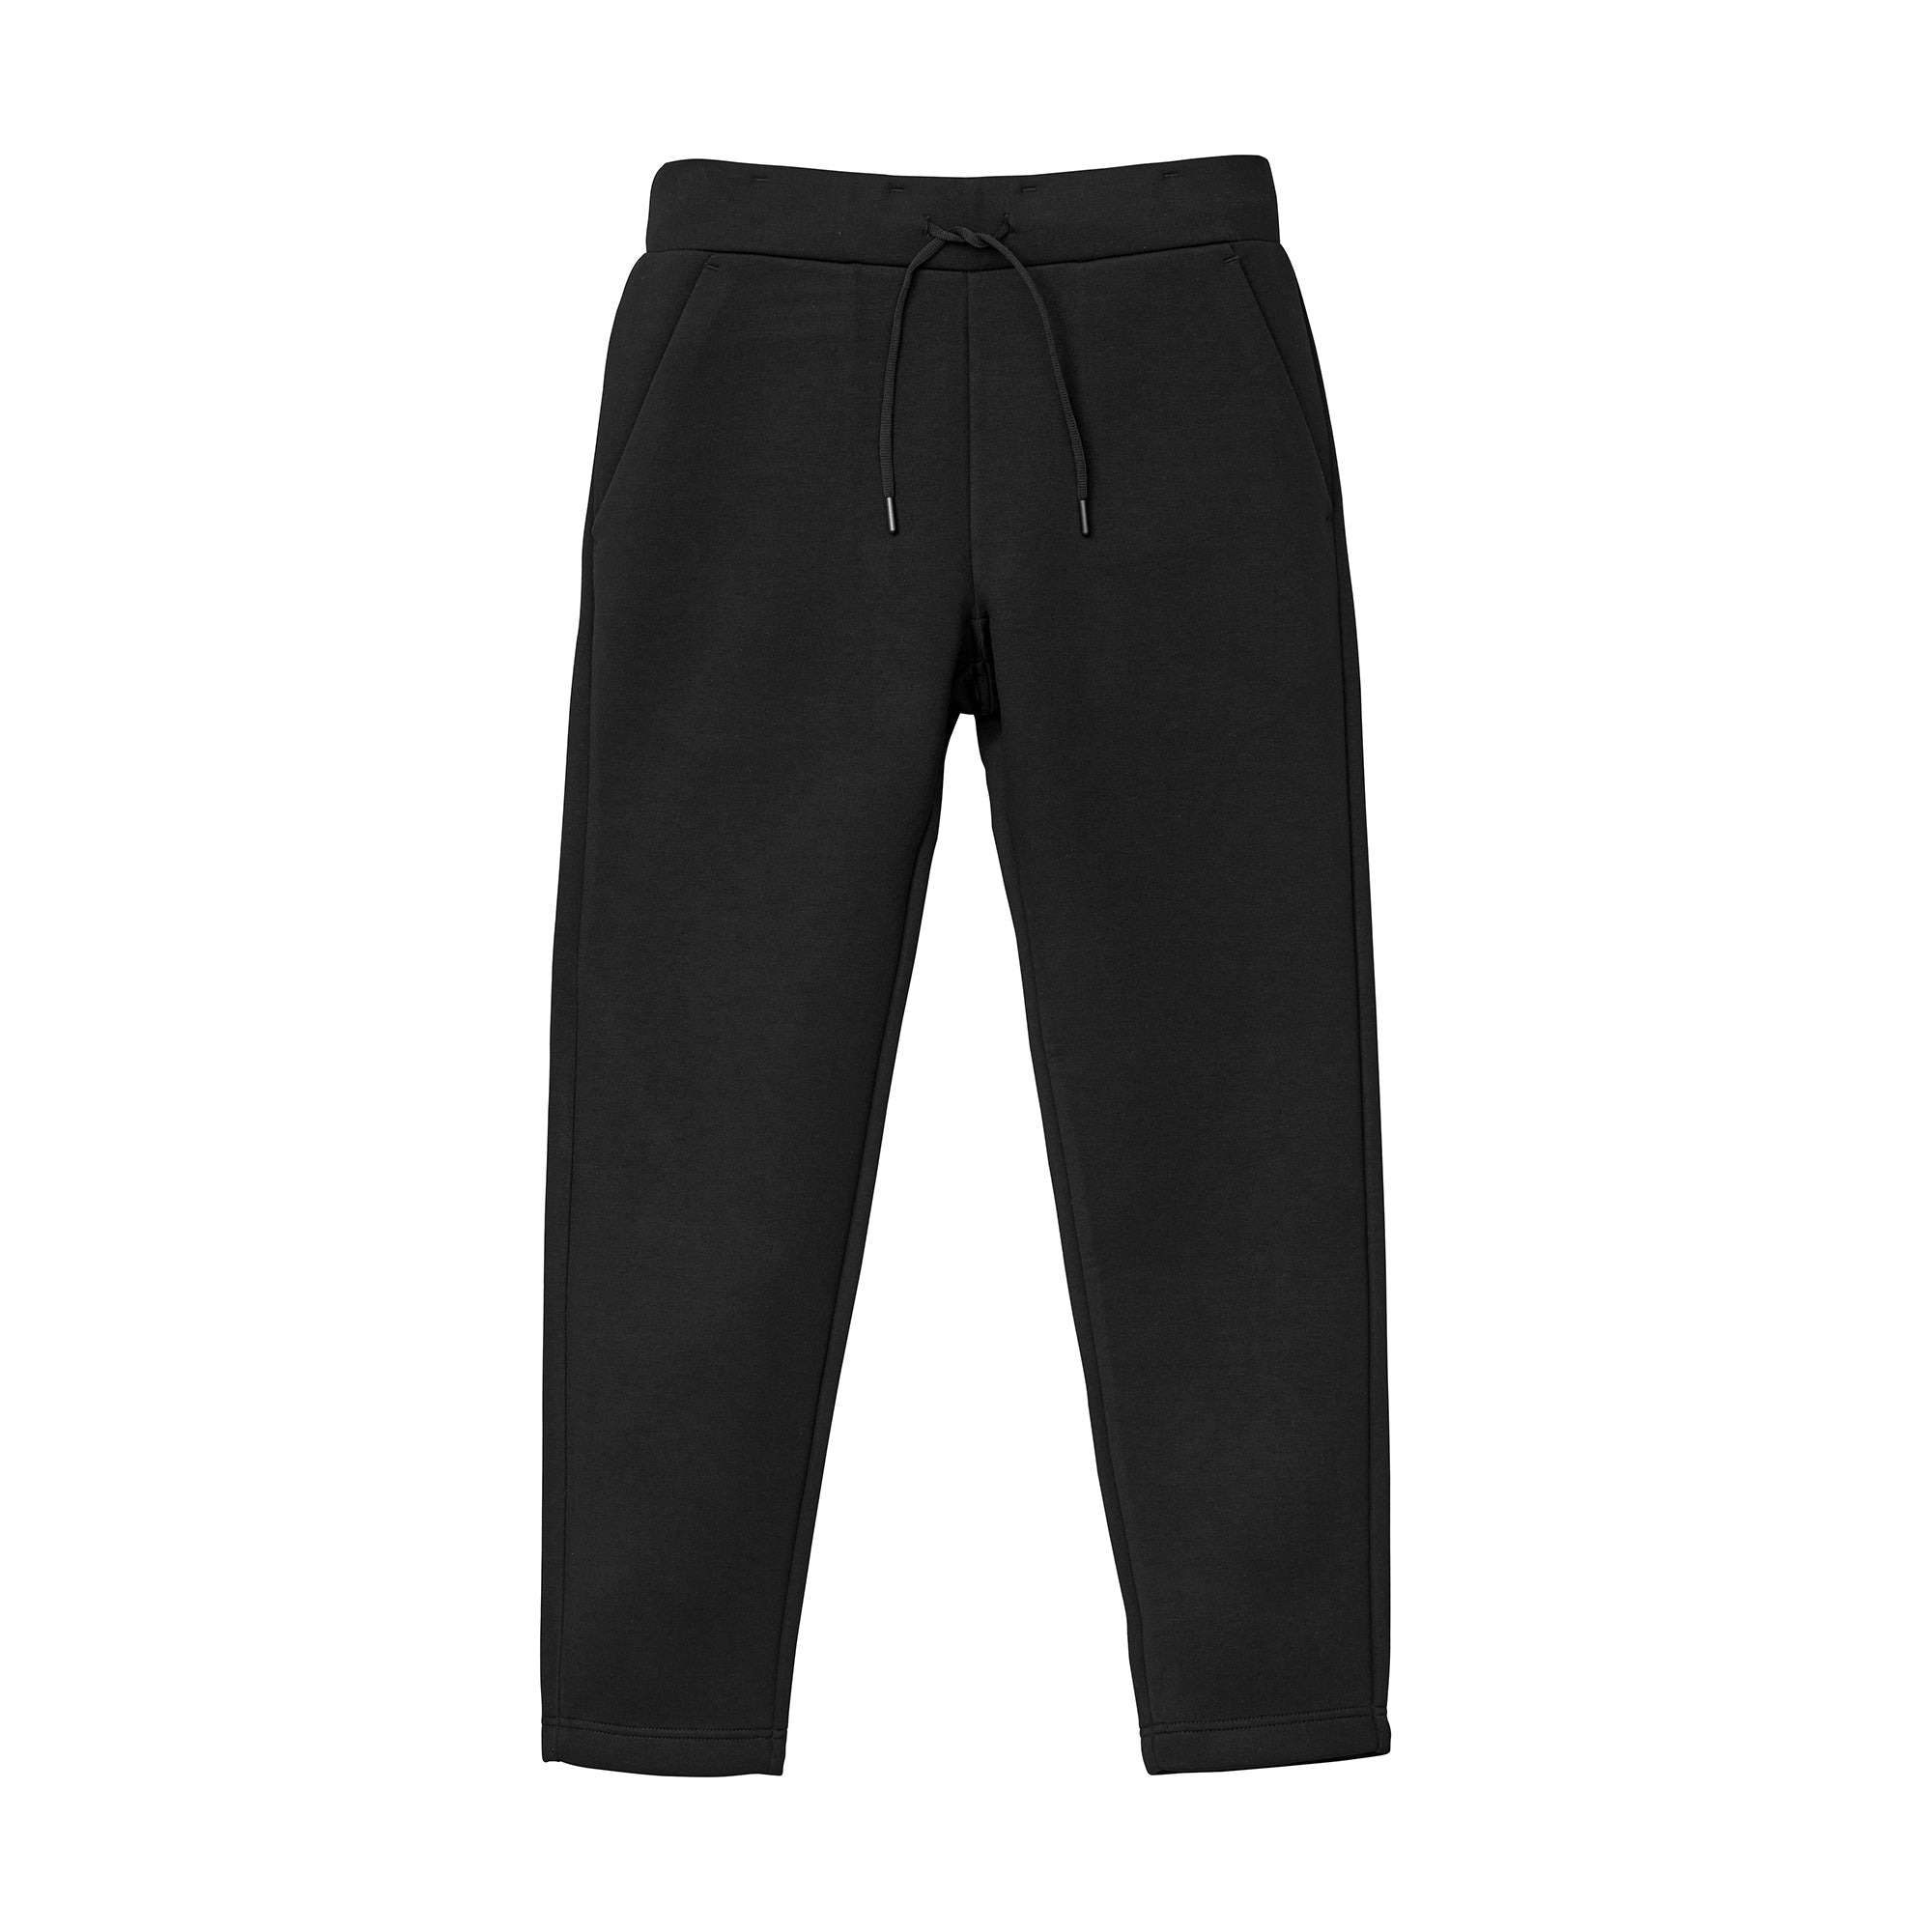 2214 - 9.4oz Tech Knit Pants - Black x 1